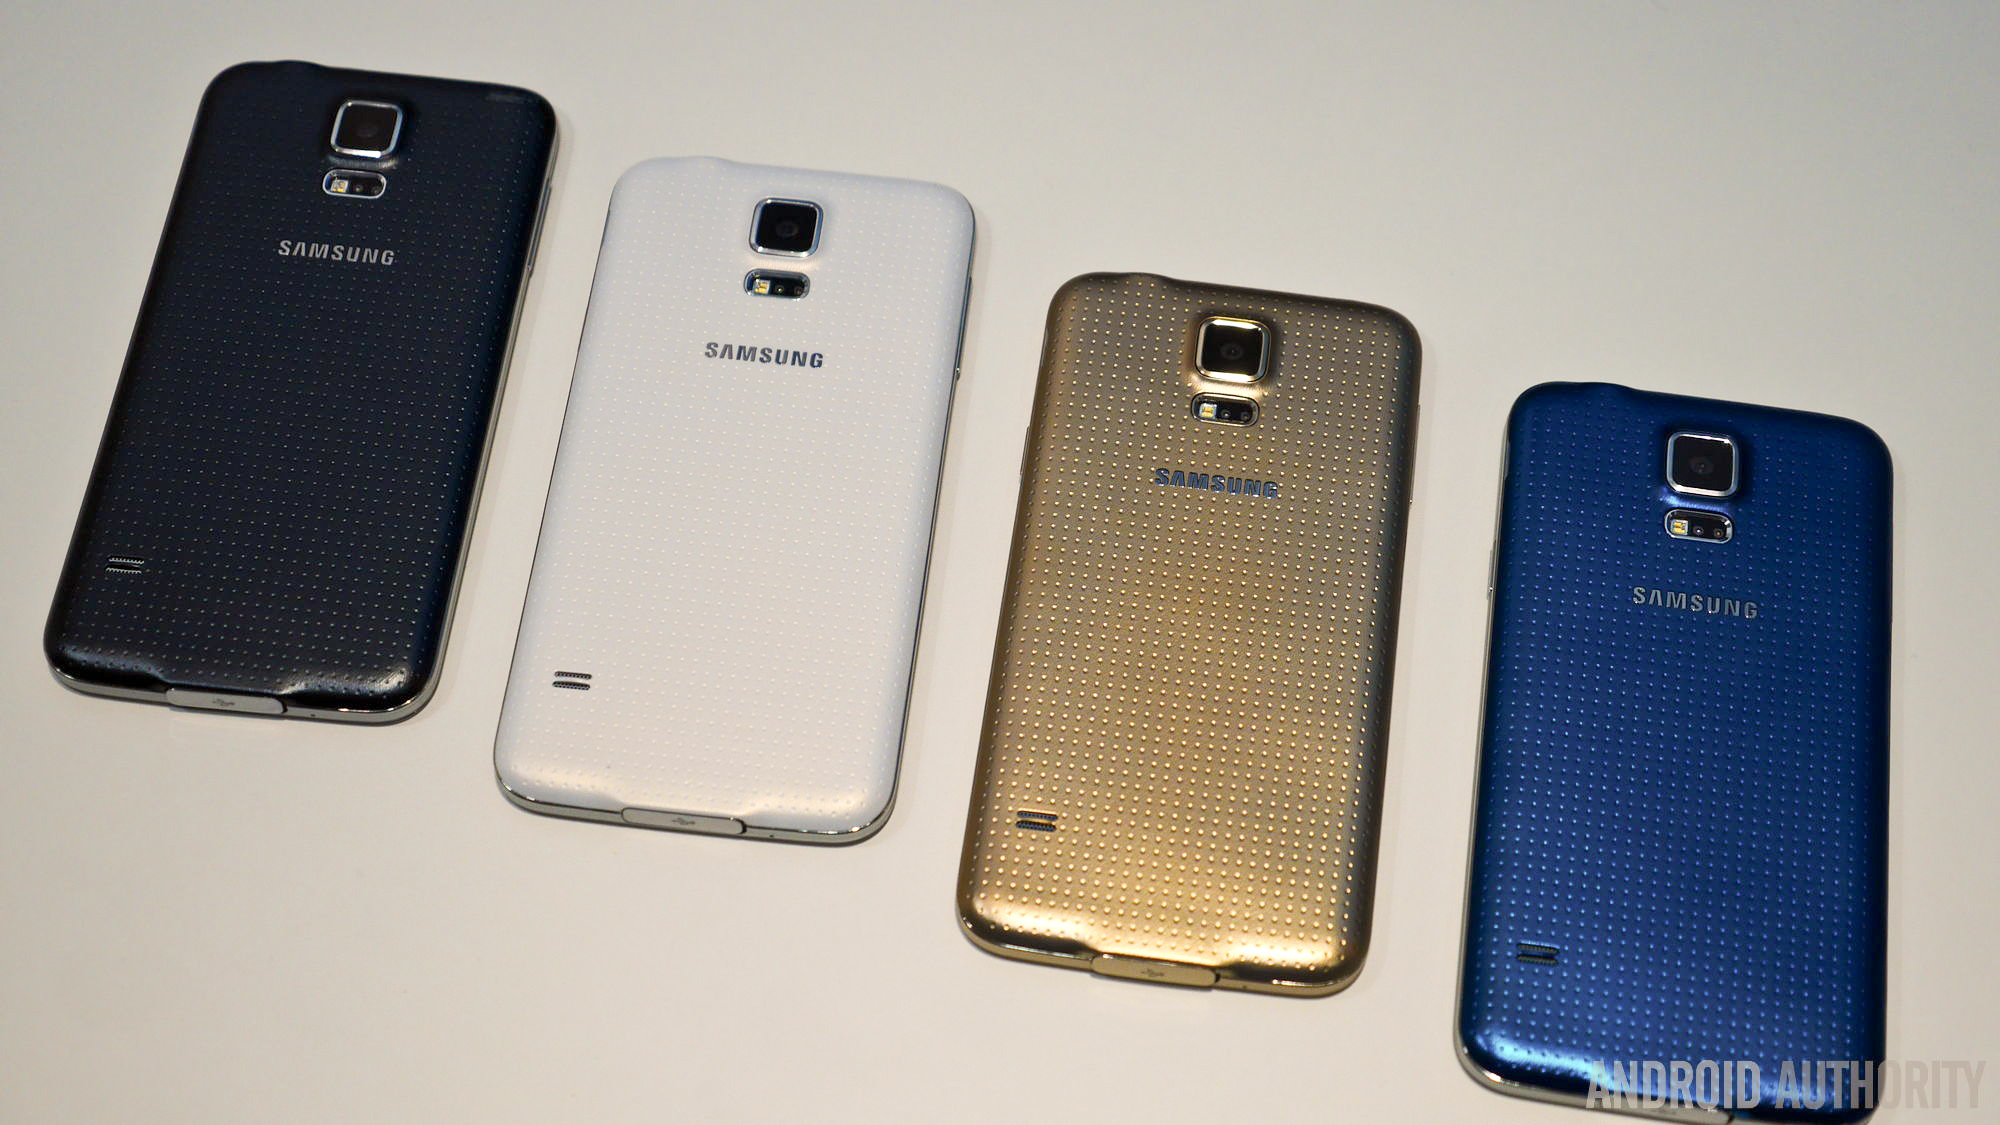 samsung galaxy s5 smartphones color options 2